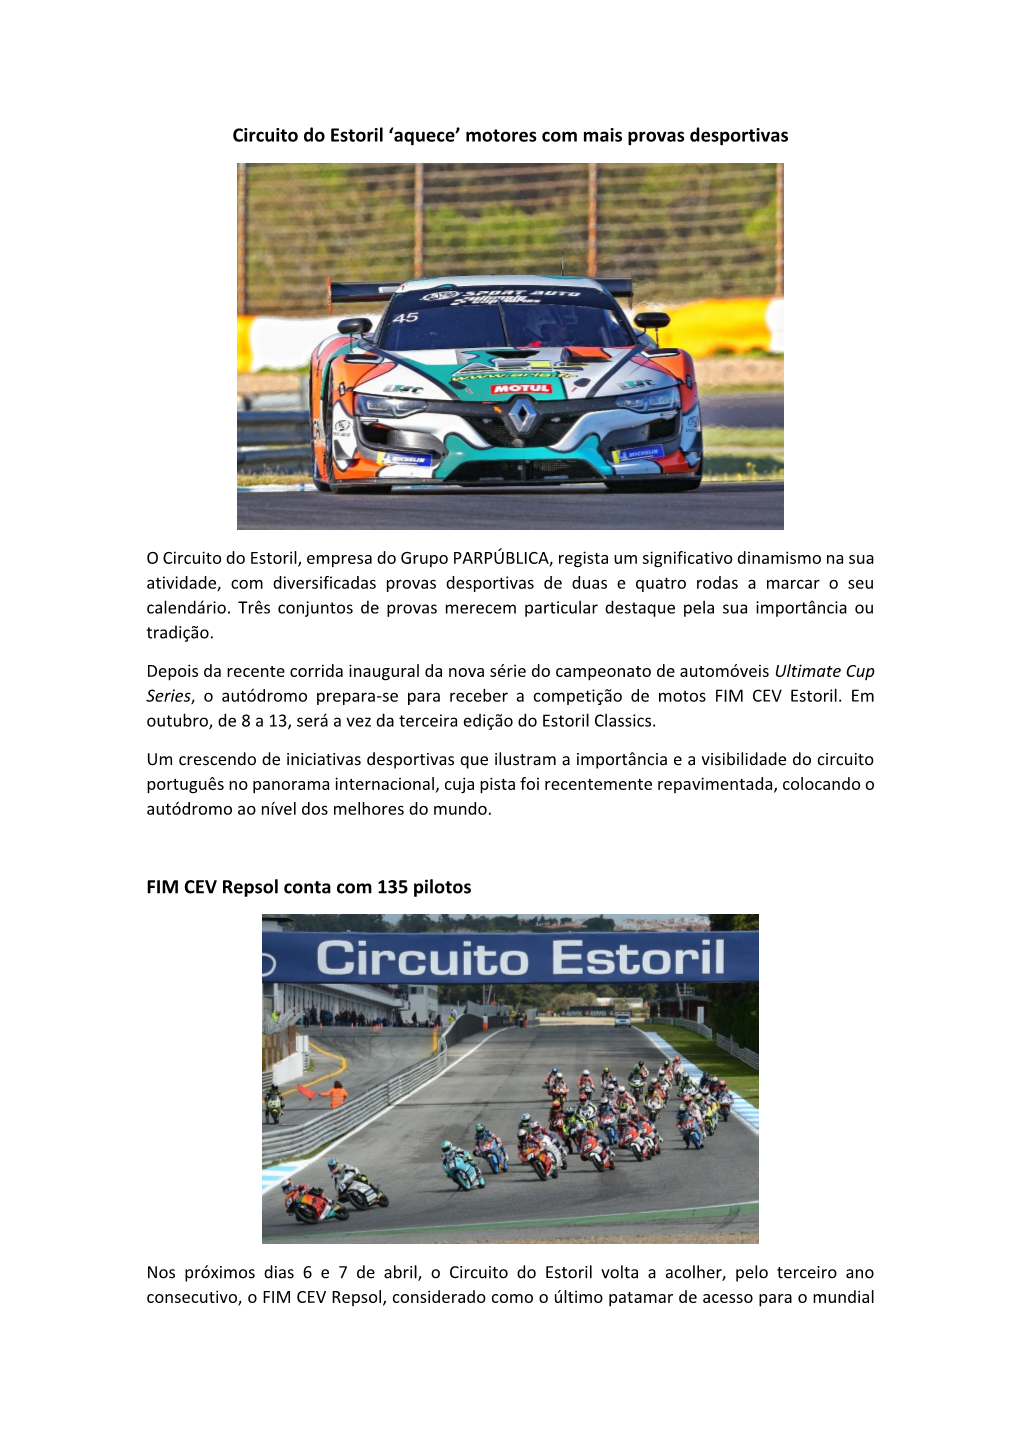 Circuito Do Estoril 'Aquece' Motores Com Mais Provas Desportivas FIM